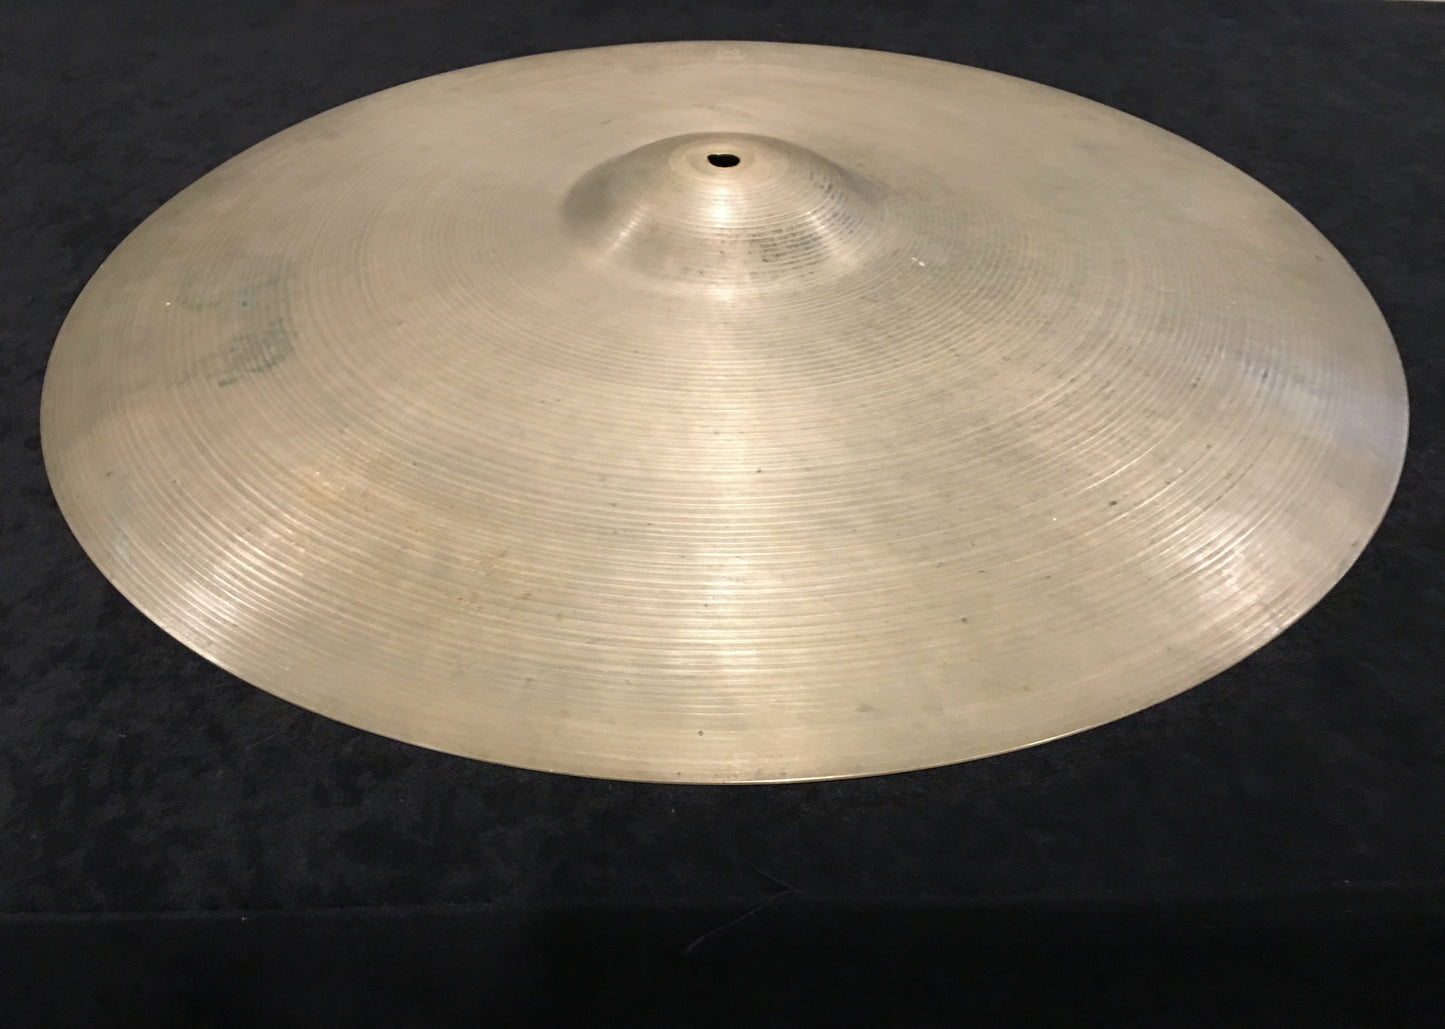 22" Zildjian A 1960's Ride Cymbal 2458g #333